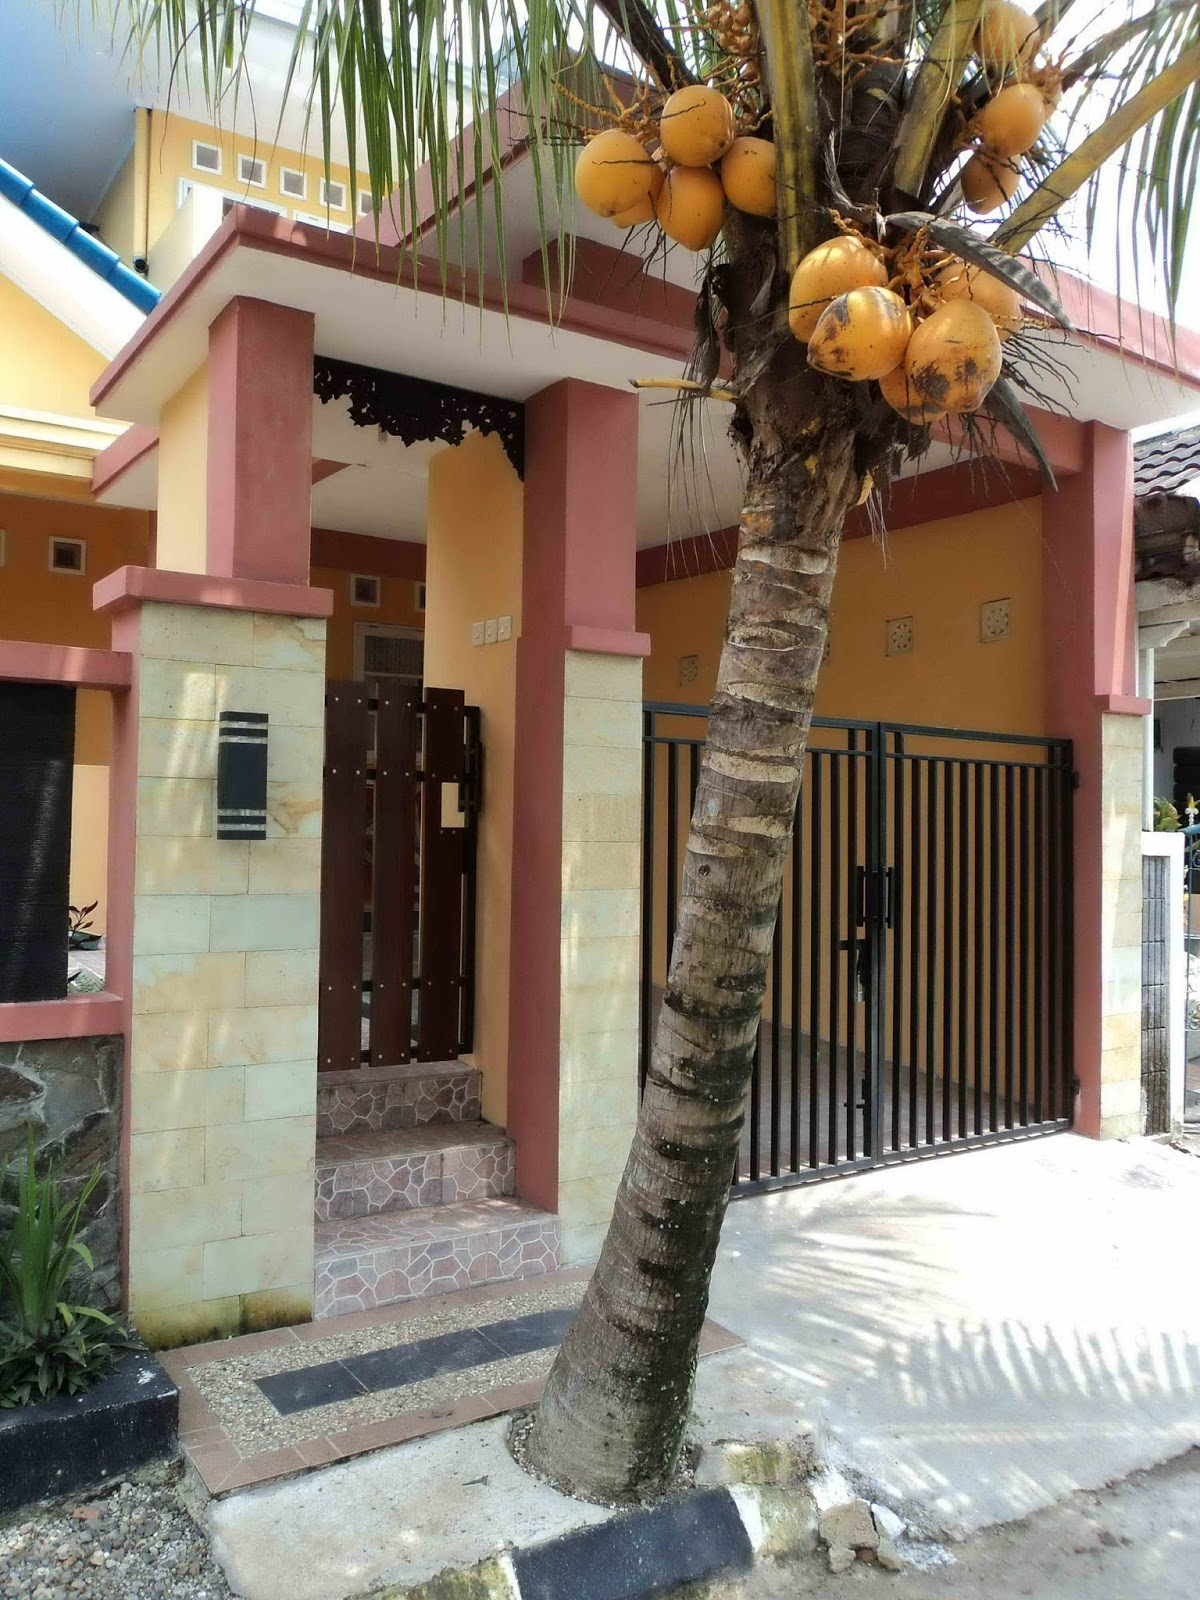 TERAS ALAM pohon kelapa gading  jual pohon kelapa gading  